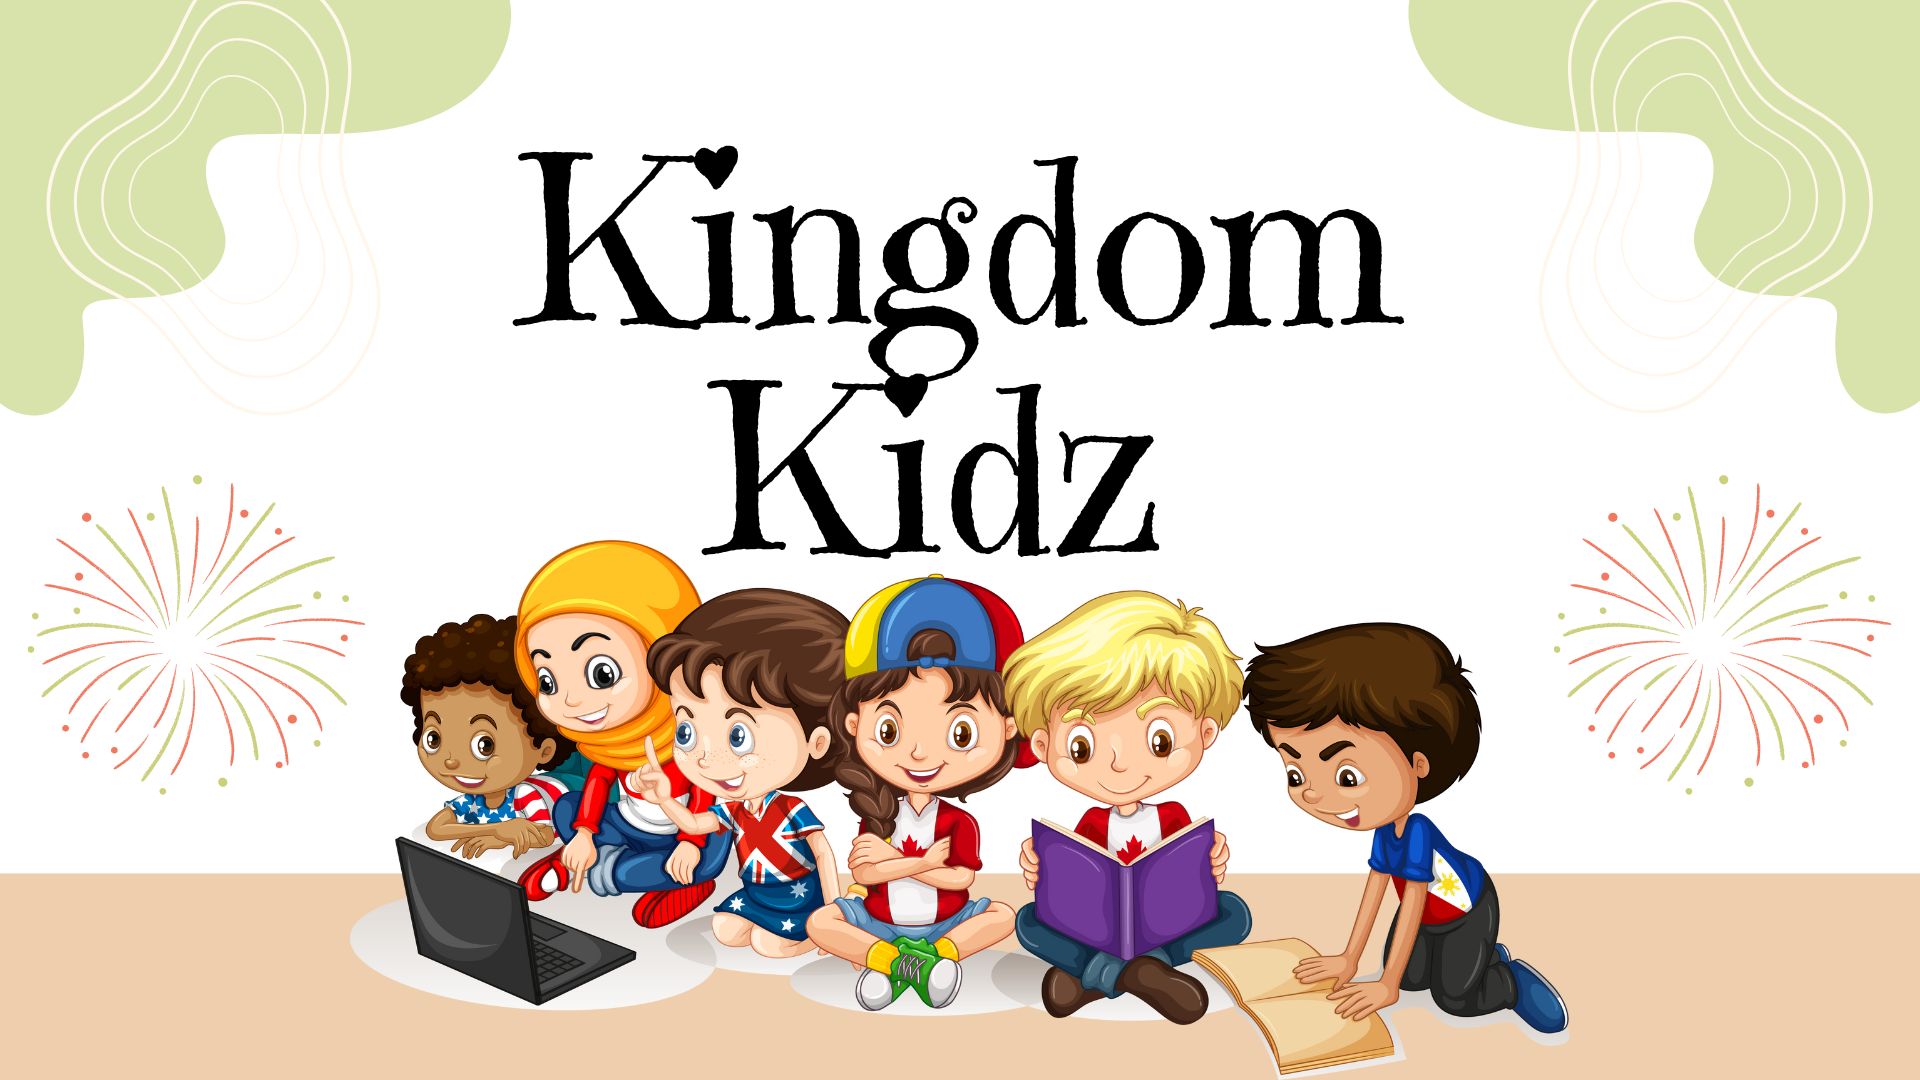 Kingdom Kidz